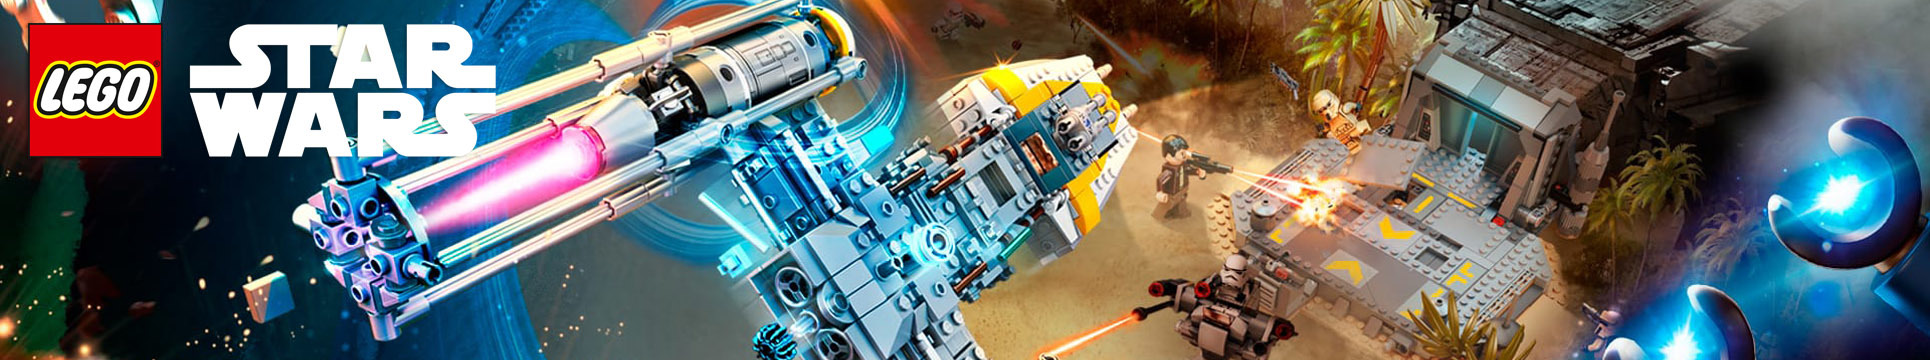 LEGO Star Wars 1HY17 Rogue One.jpg